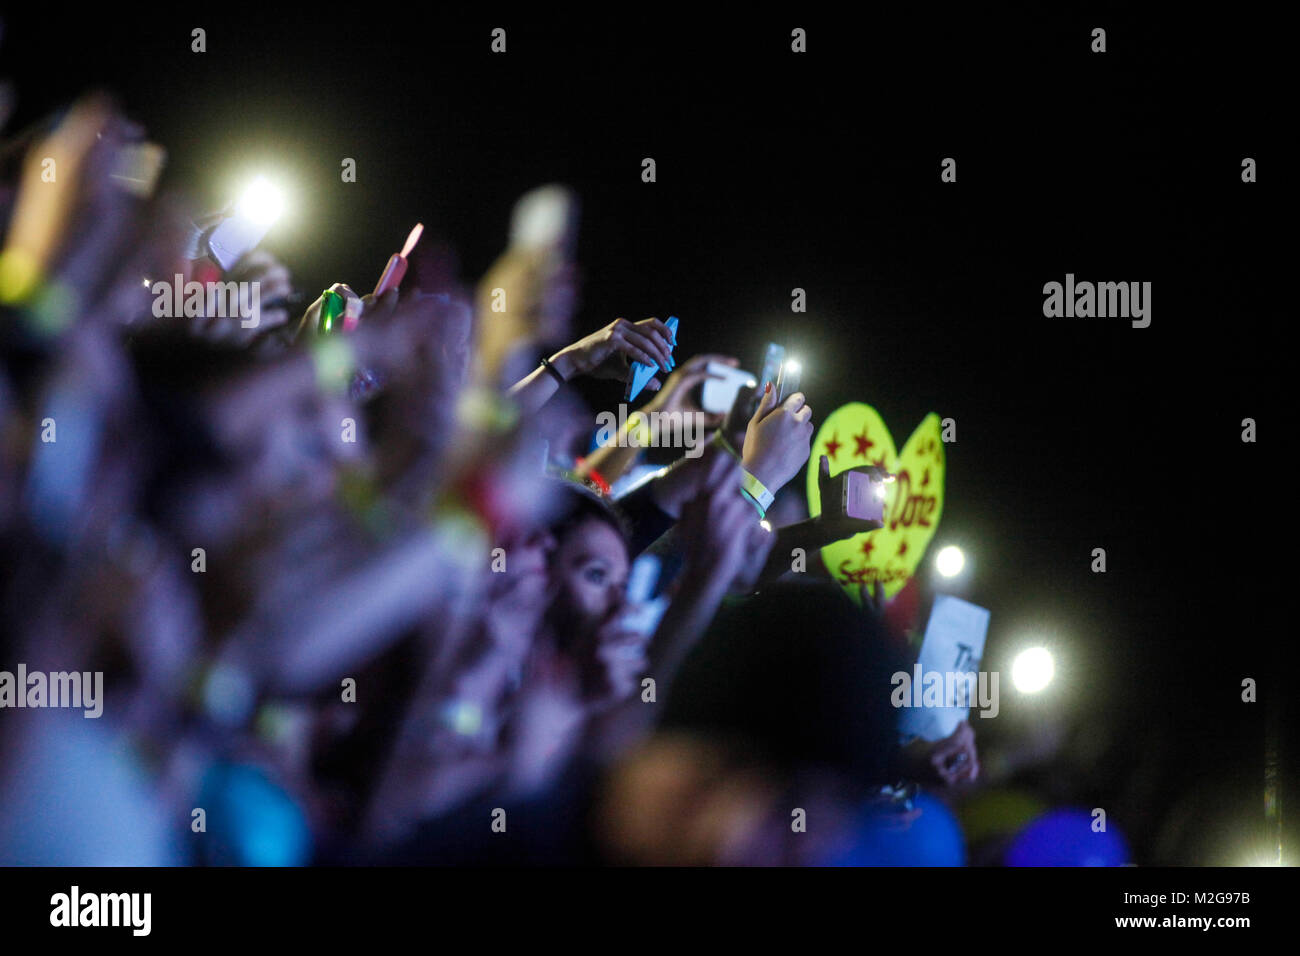 Die amerikanische Schauspielerin und Sängerin Selena Gomez steht am Samstag (14.09.2013) in der Frankfurter Jahrhunderthalle auf der Bühne. Der ausverkaufte Auftritt in der Mainmetropole ist die einzige Tour-Station in Deutschland. +++ 3S foto / Foto: Sven-Sebastian Sajak Foto Stock